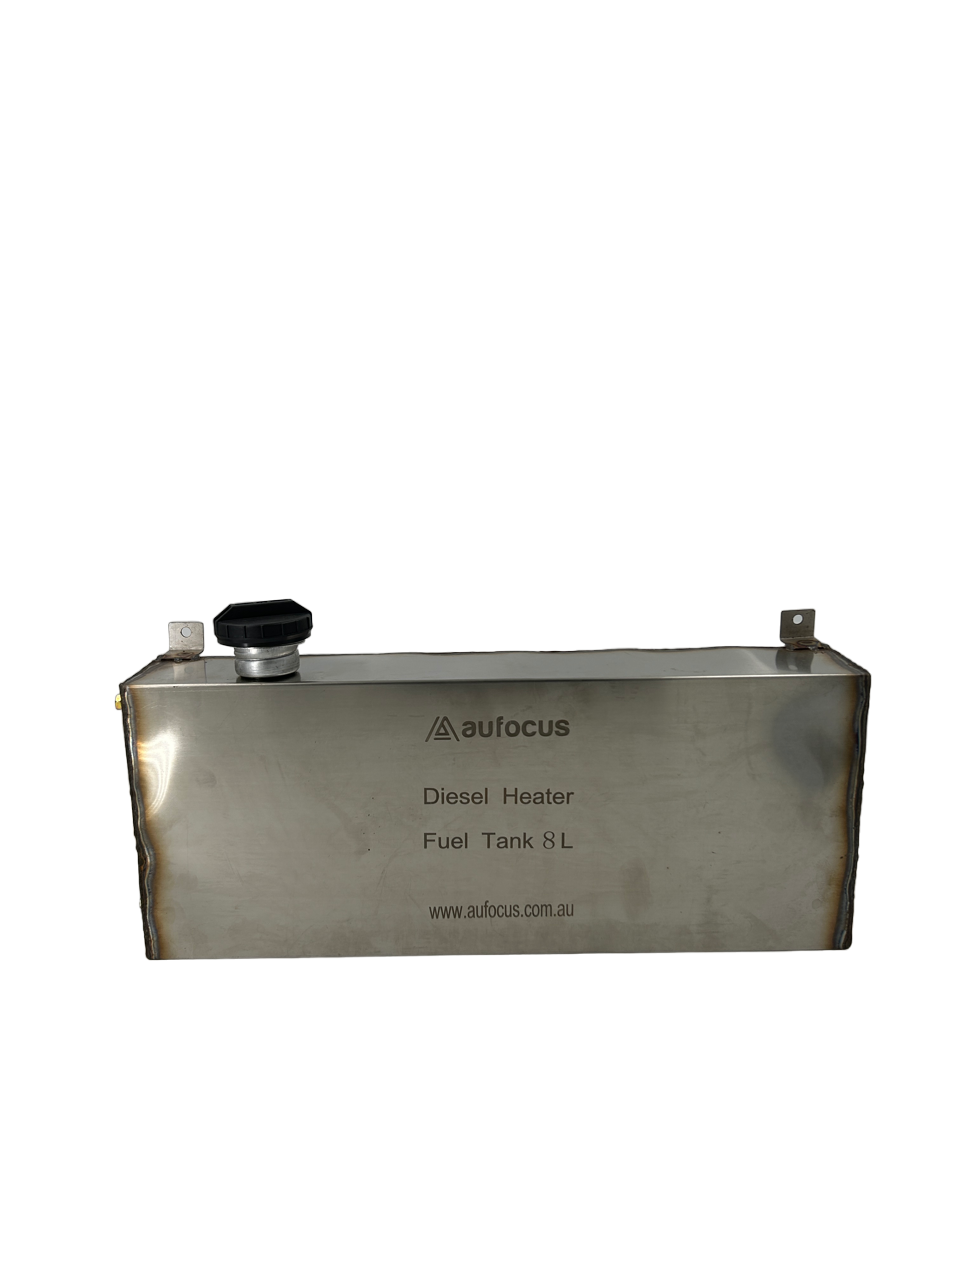 Diesel Heater Fuel Tank (Stainless Steel)